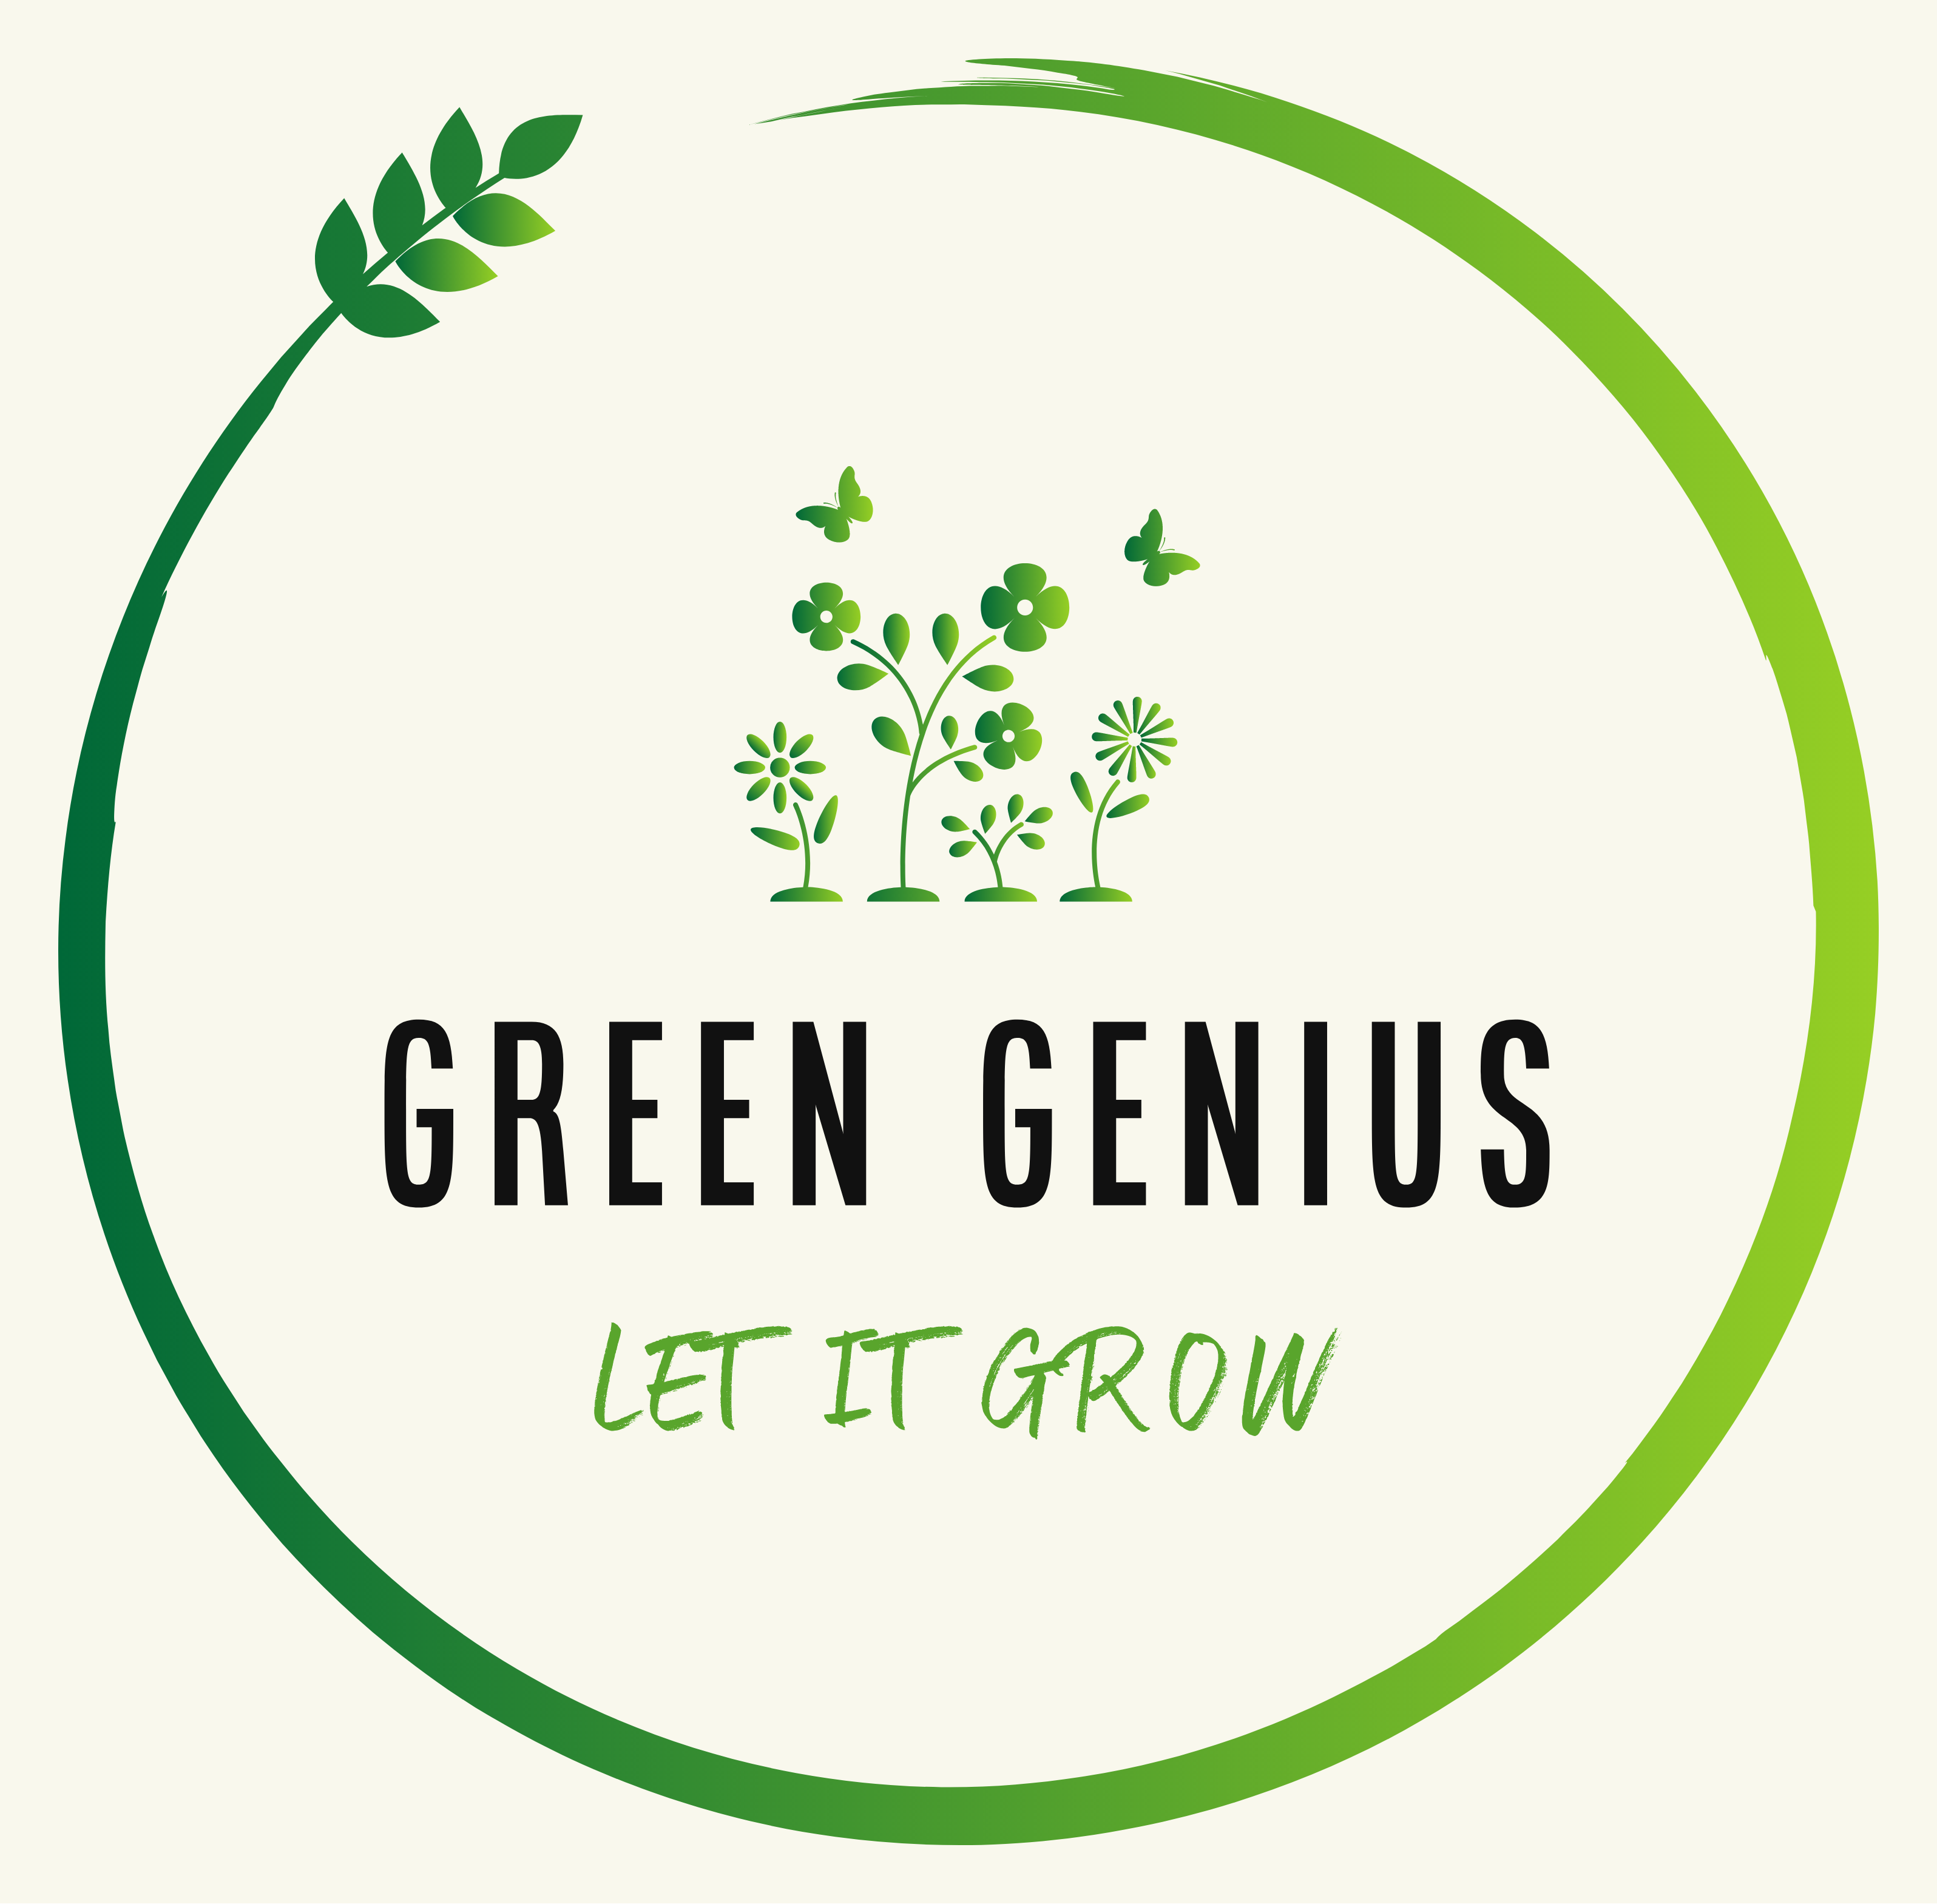 www.greengenius.com.au